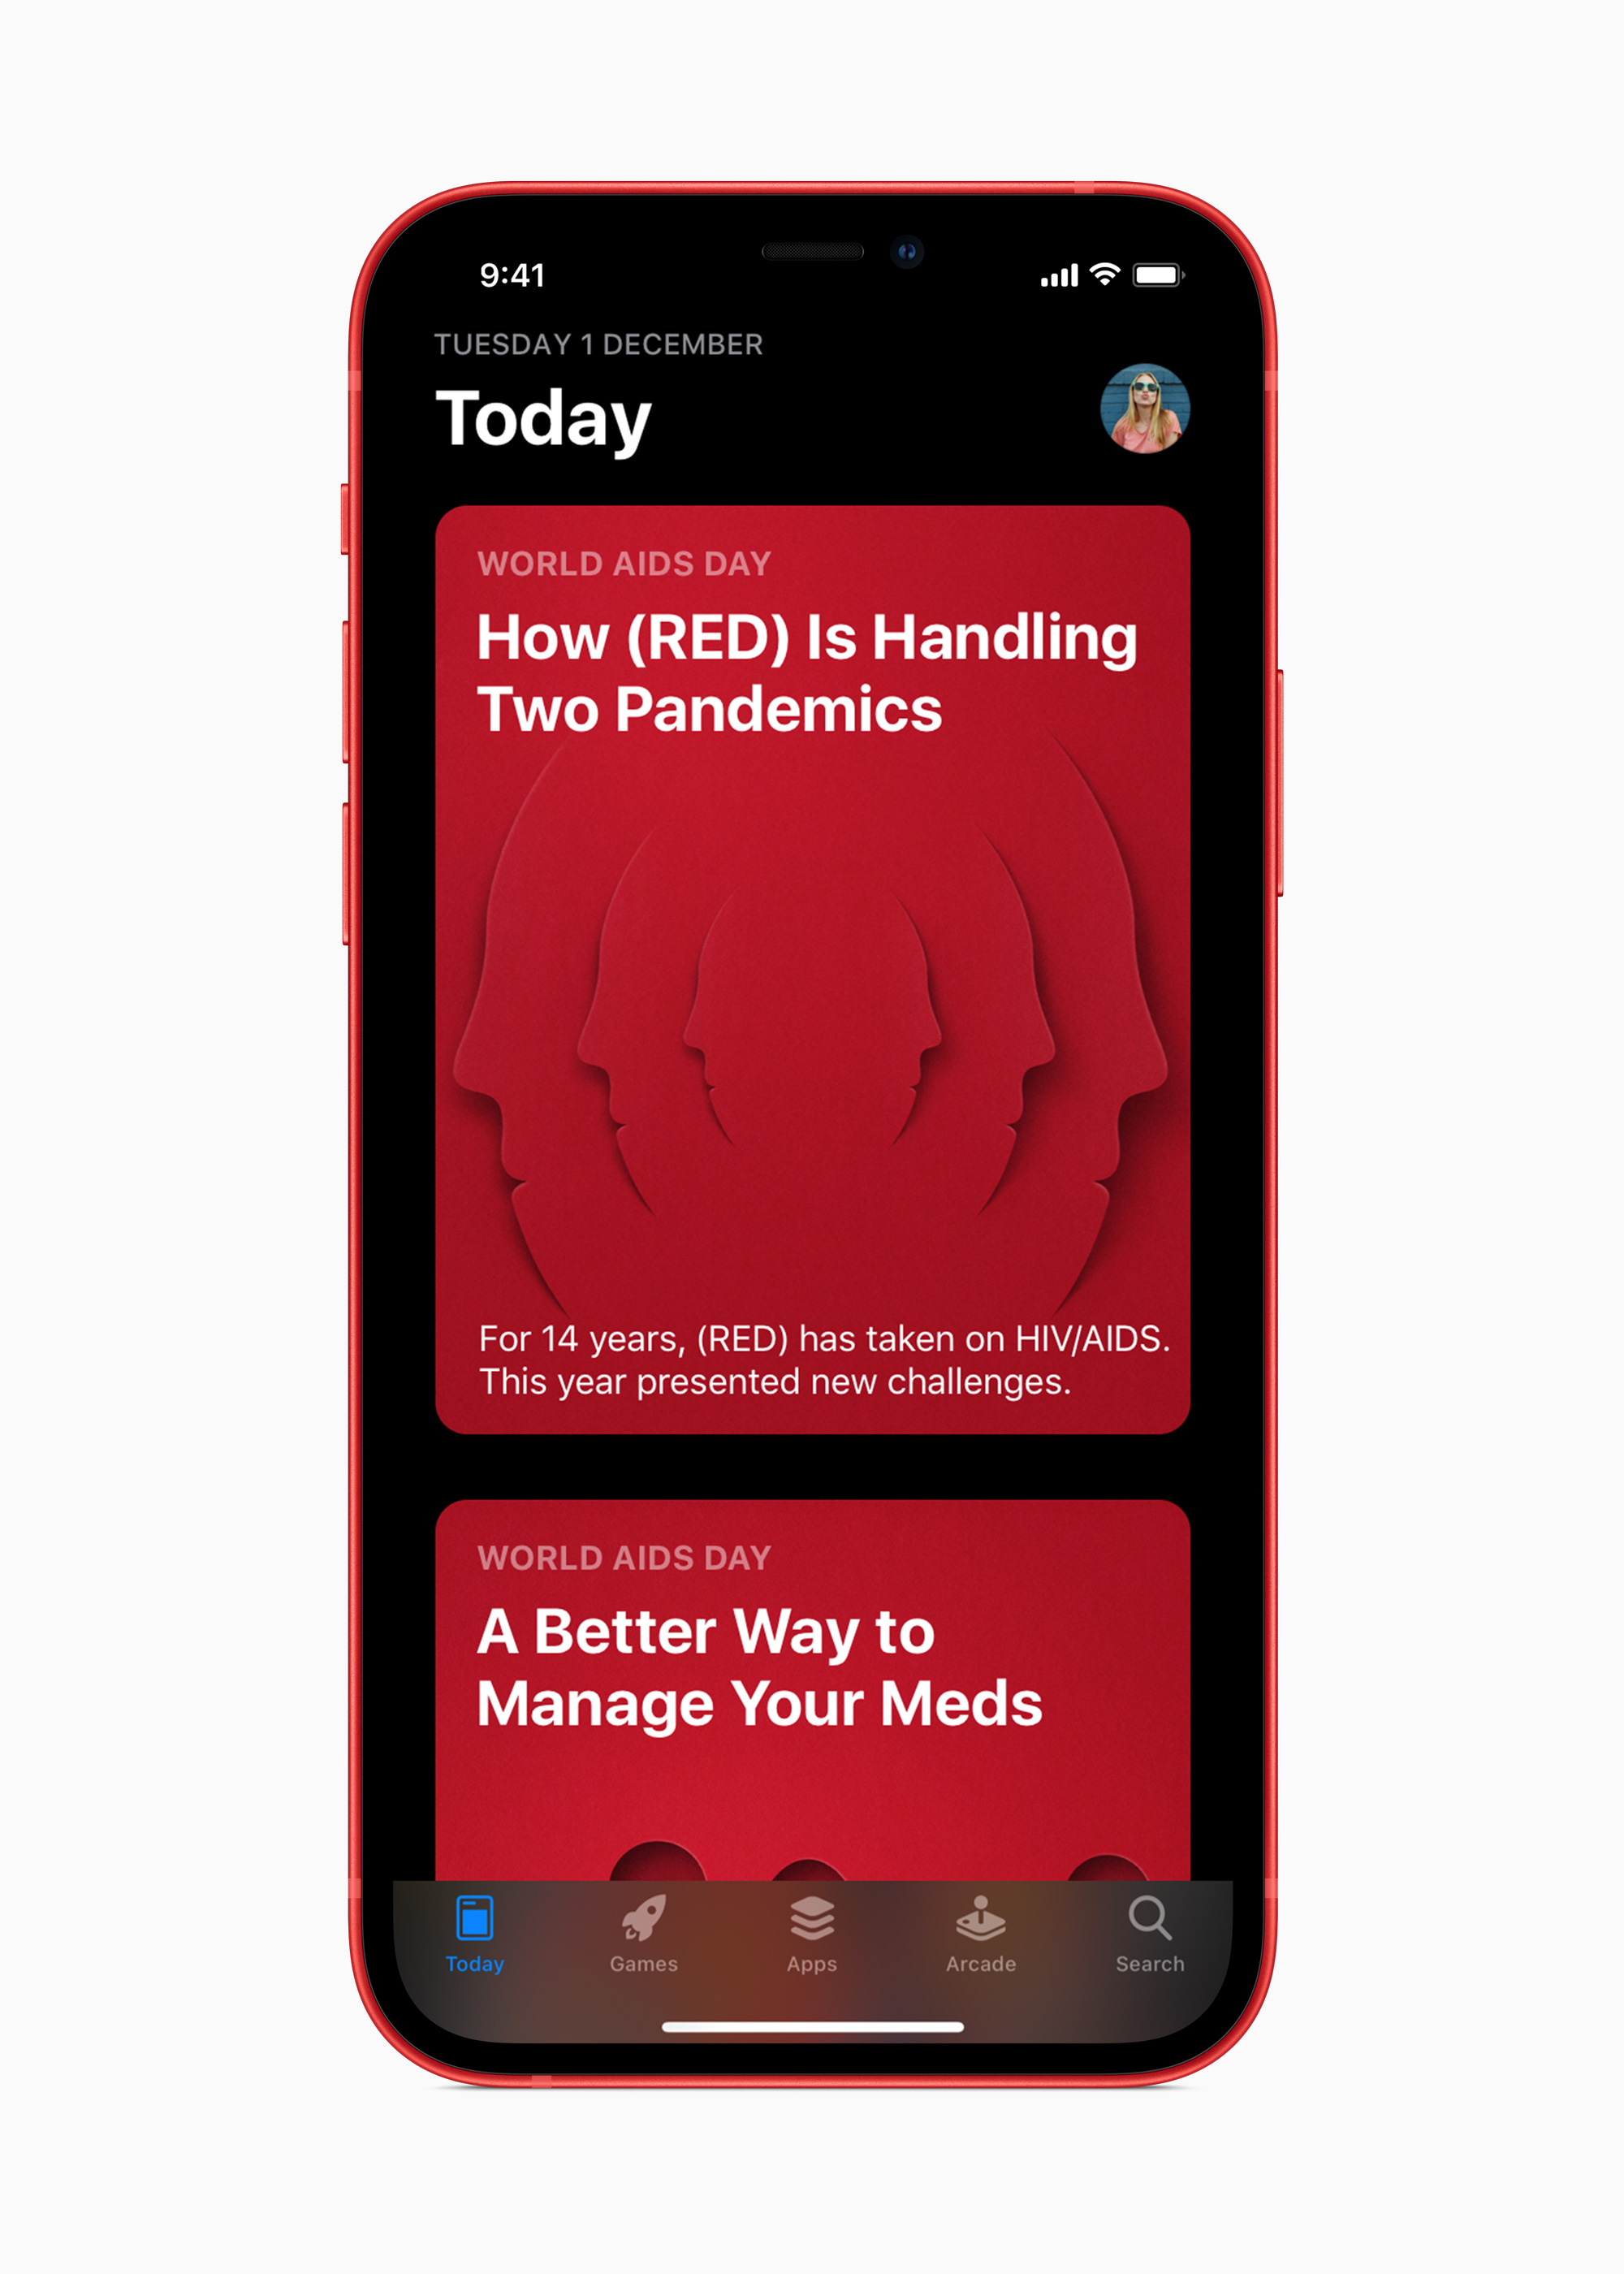 アップルが(RED)と提携拡大、真っ赤なPRODUCT(RED)製品で新型コロナとエイズ対策に追加支援 - Engadget 日本版